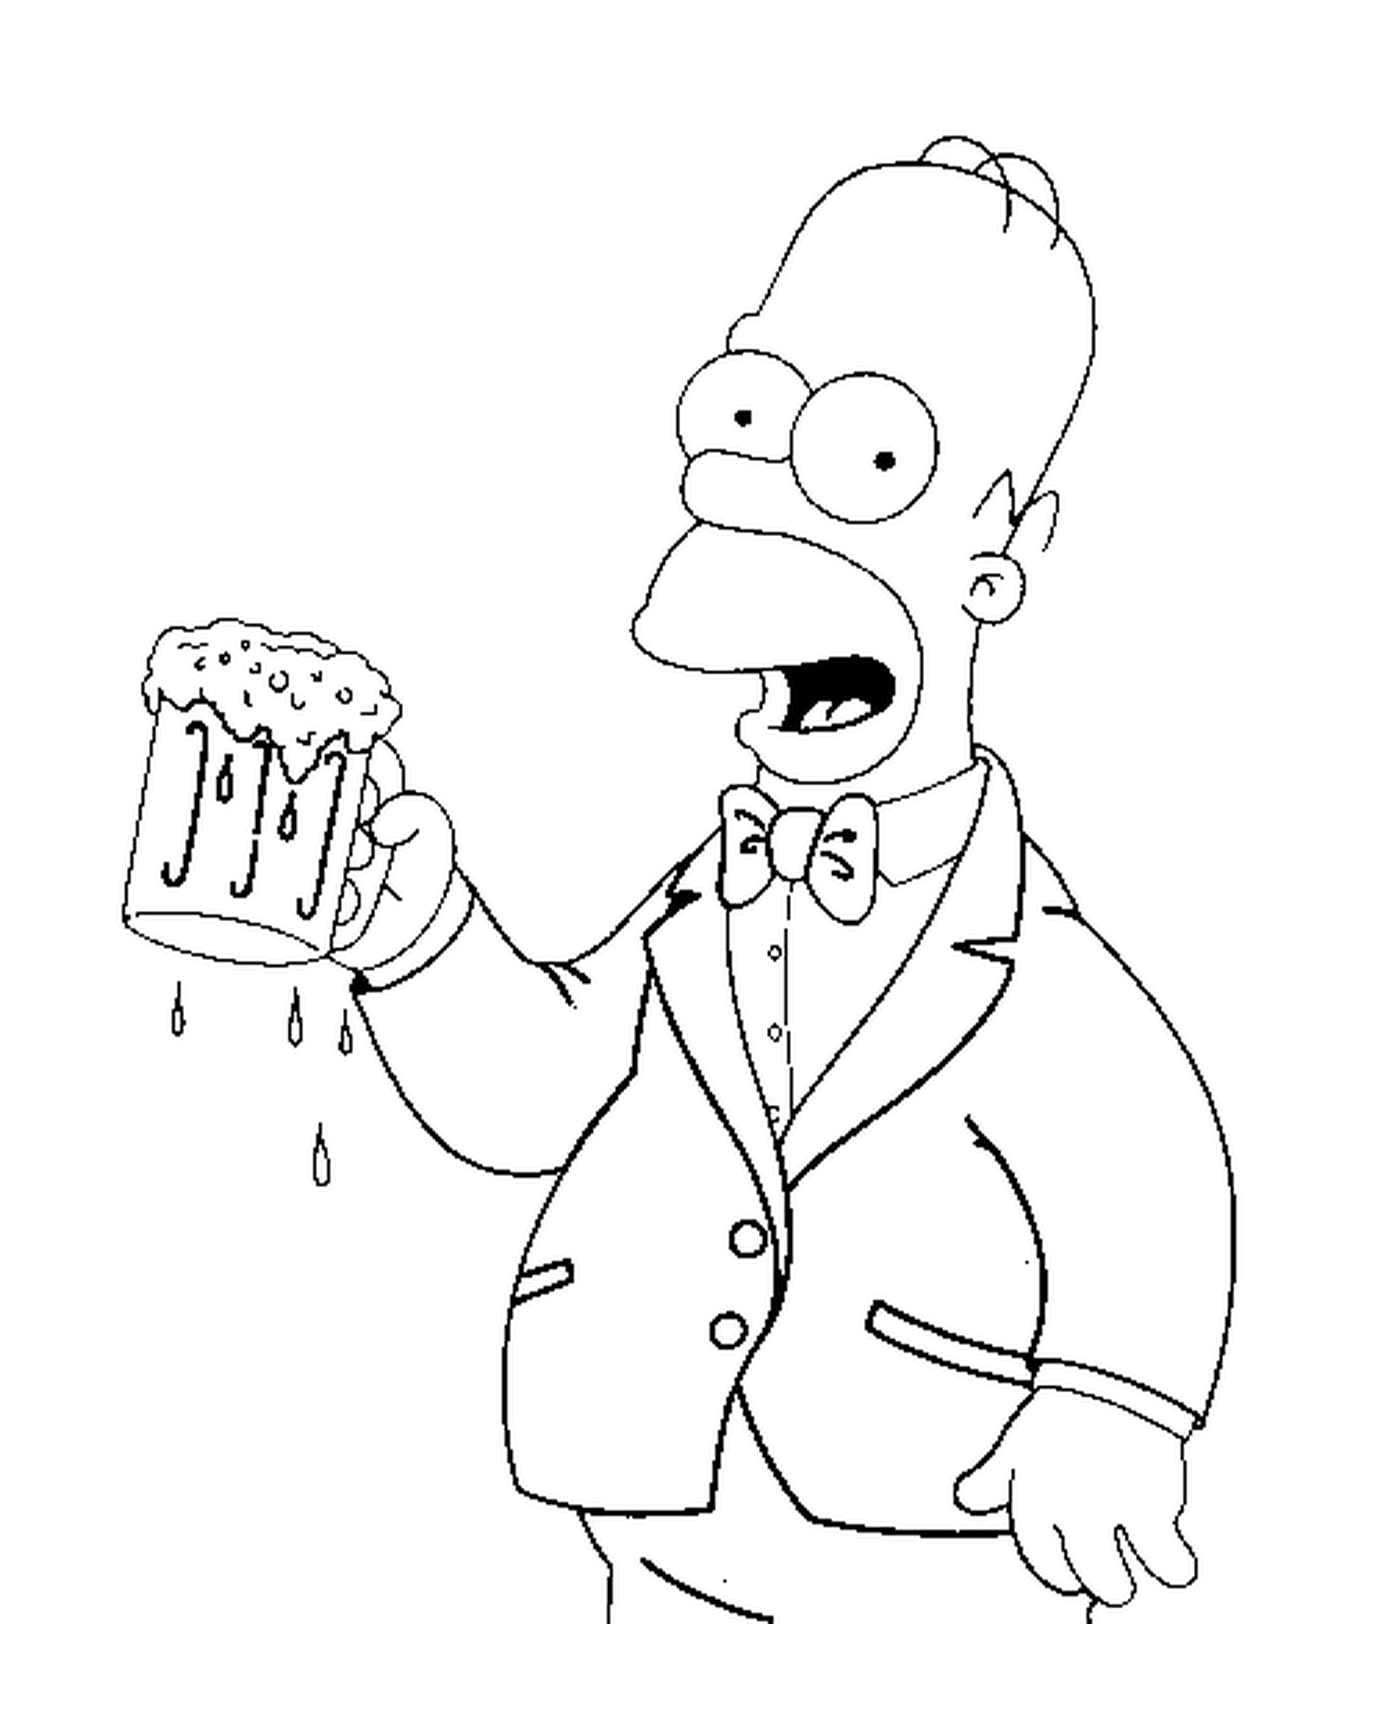  Homero tiene una cerveza fresca 